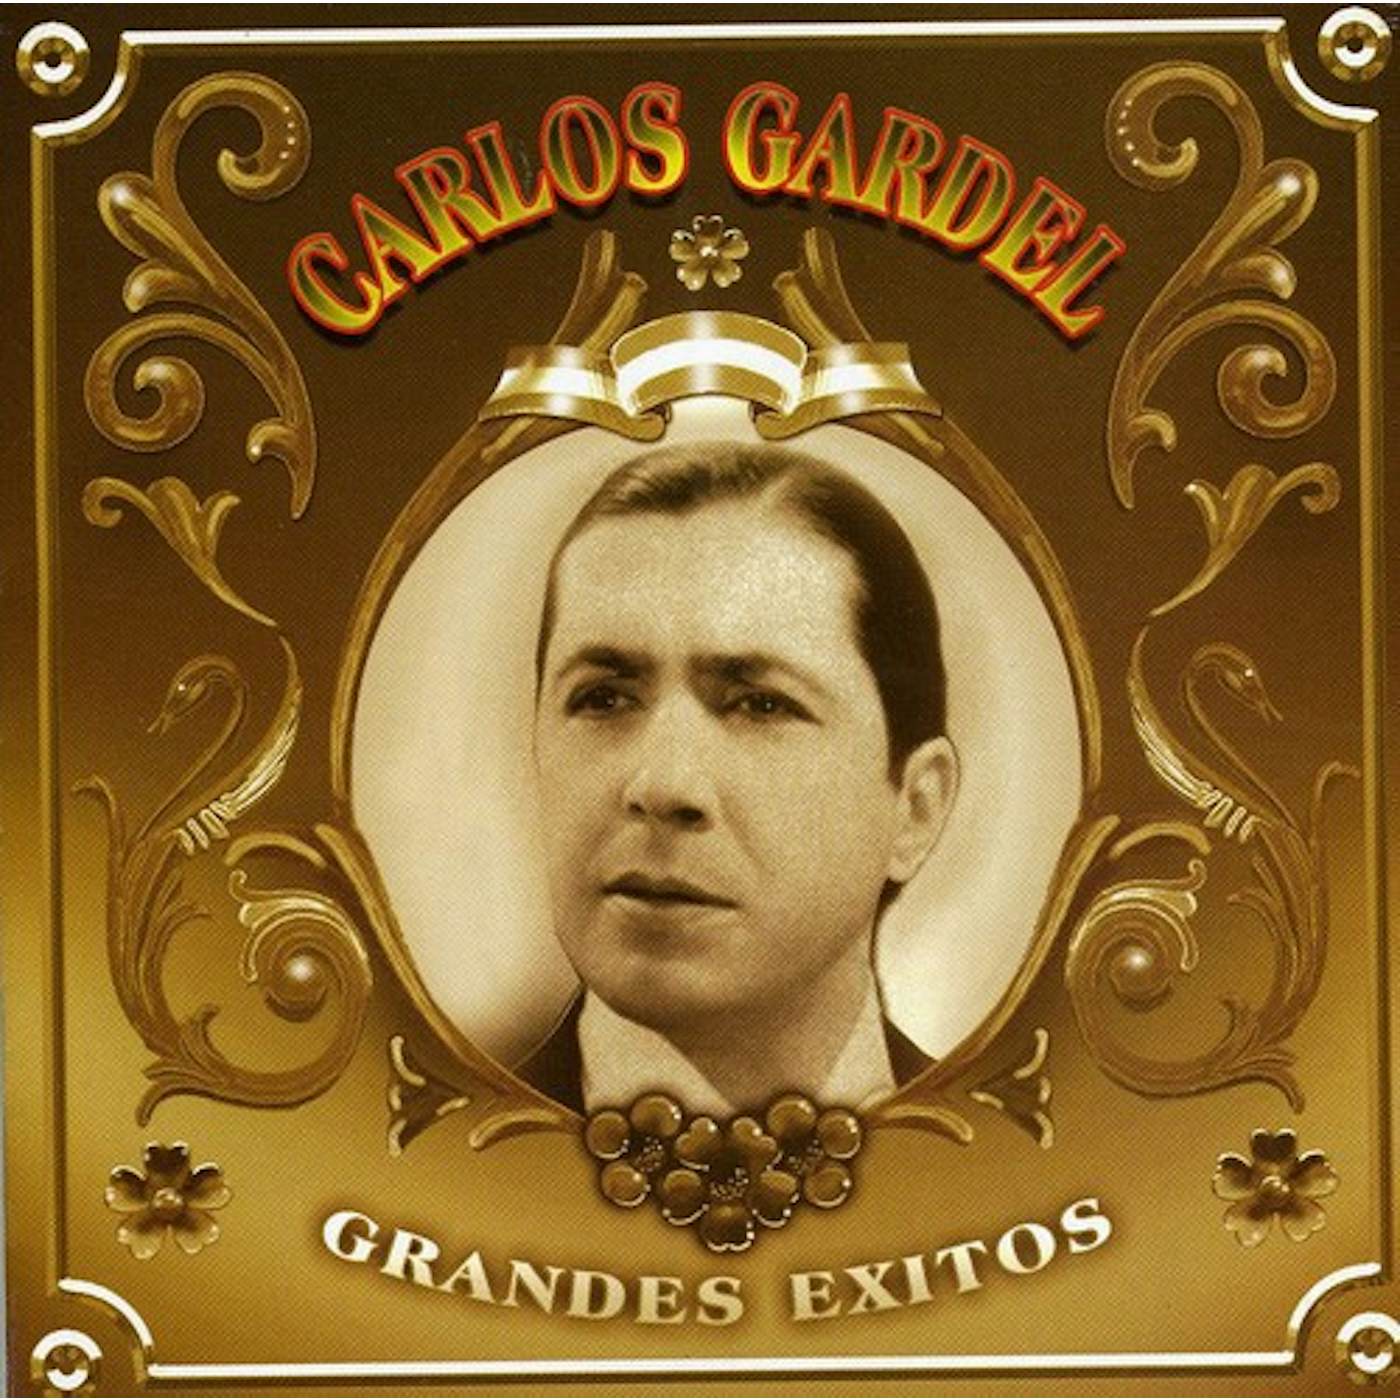 Carlos Gardel GRANDES EXITOS CD